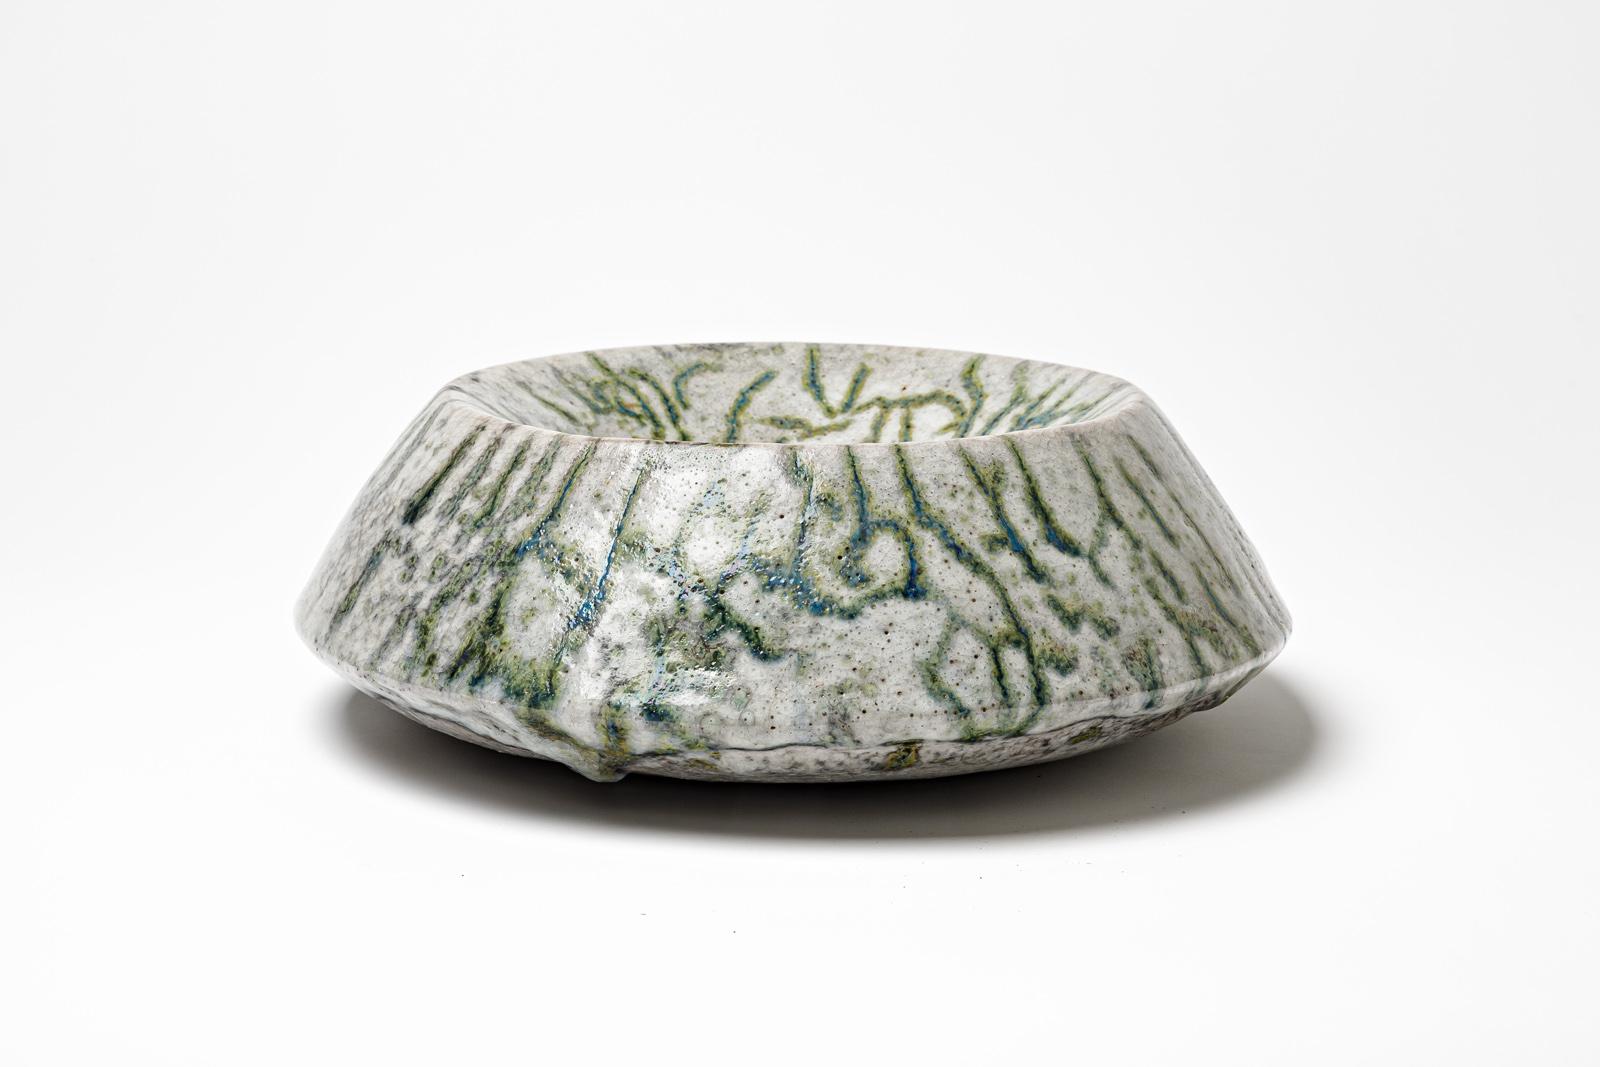 Coupe en céramique émaillée verte et blanche de Gisèle Buthod Garçon. 
Raku a tiré. Monogramme de l'artiste sous la base. Vers 1980-1990. 
H : 4.7' x 12.6' pouces.